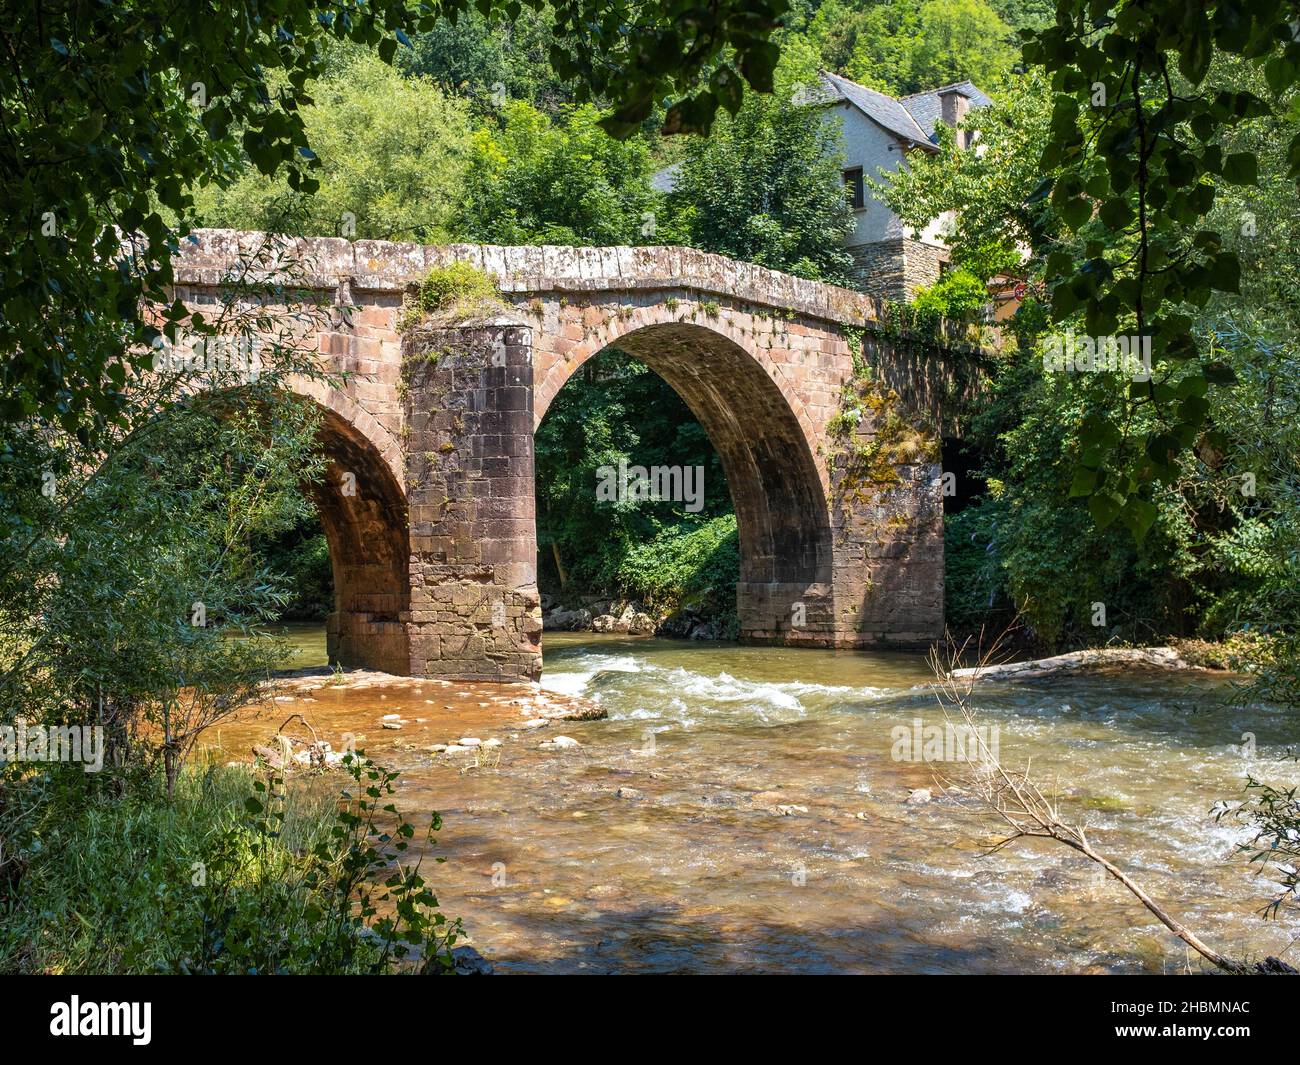 Puente romano de piedra de Conques en el camino de Santiago, cruzando un pequeño río tumultuoso, tomado en una mañana soleada de verano, sin gente Foto de stock